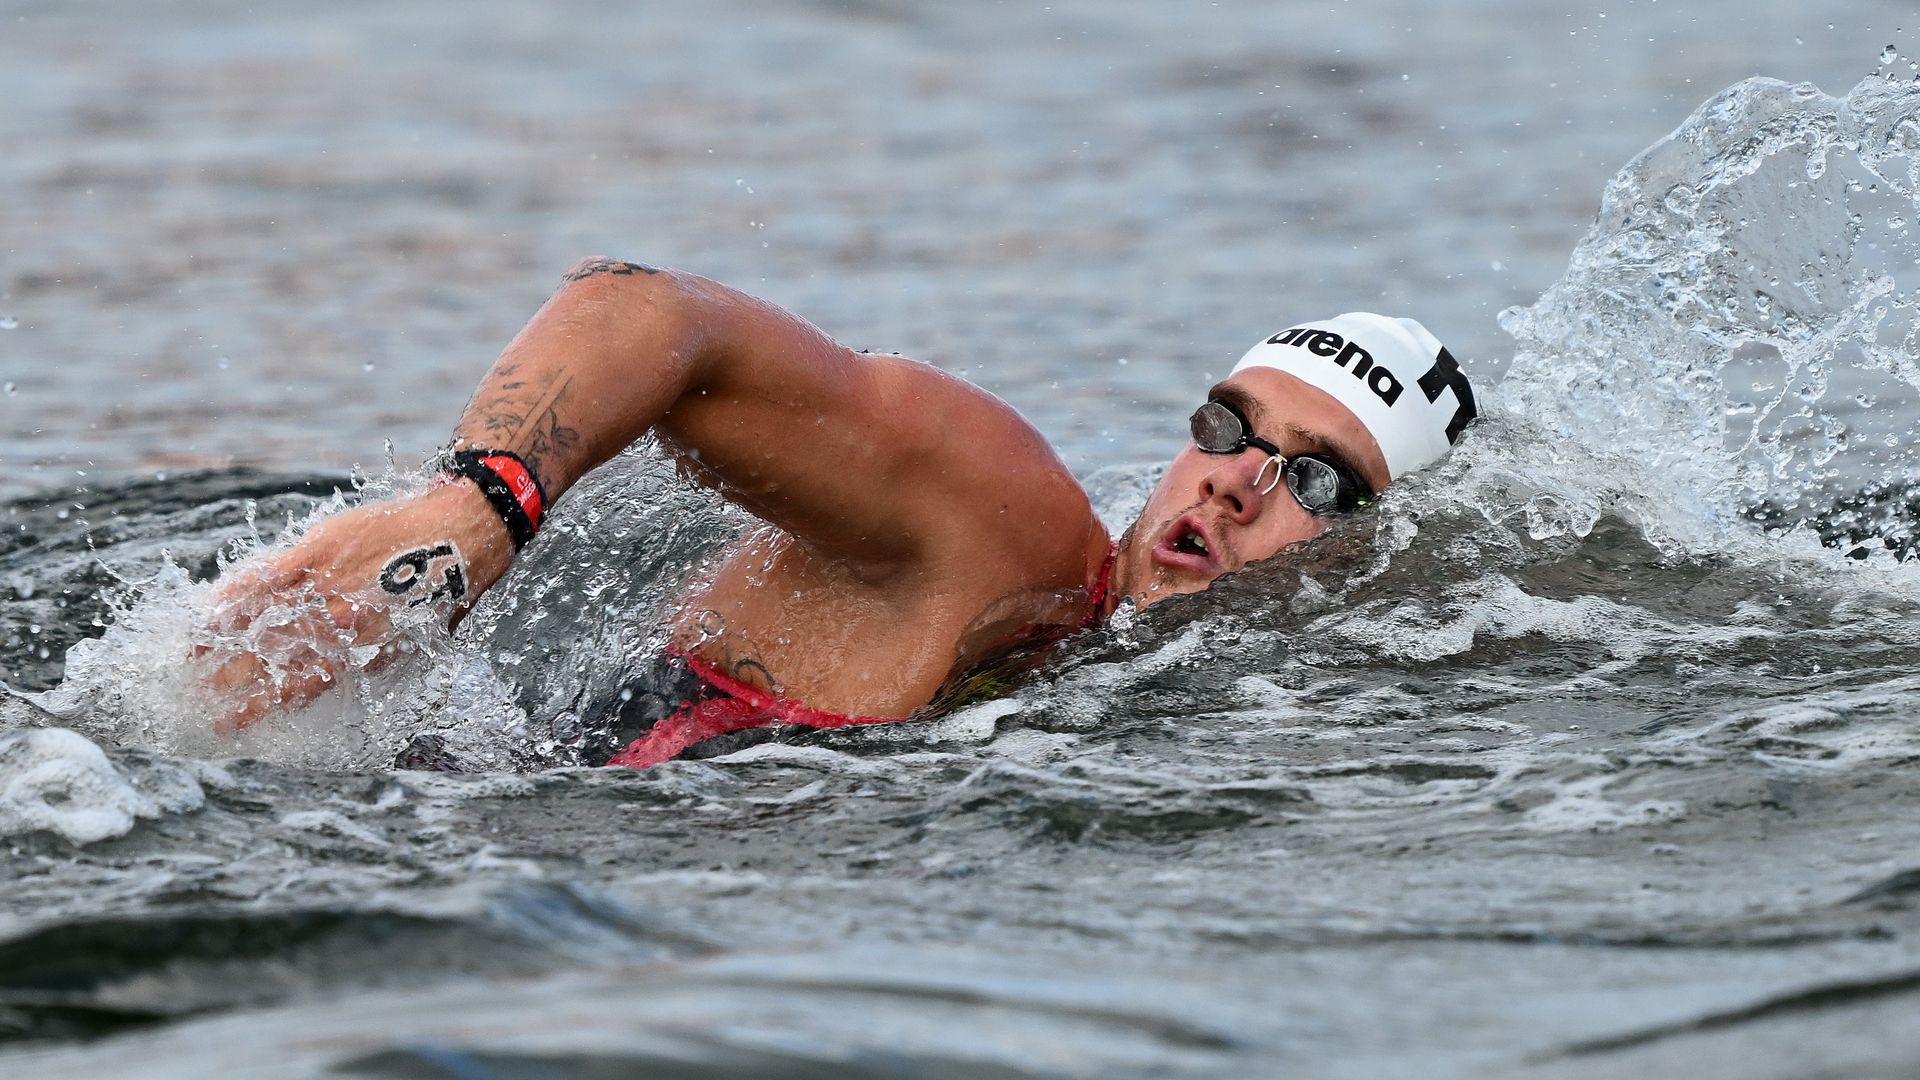 Rasovszky Kristóf a verseny elejétől az élmezőnyben úszott (Fotó: Getty Images)